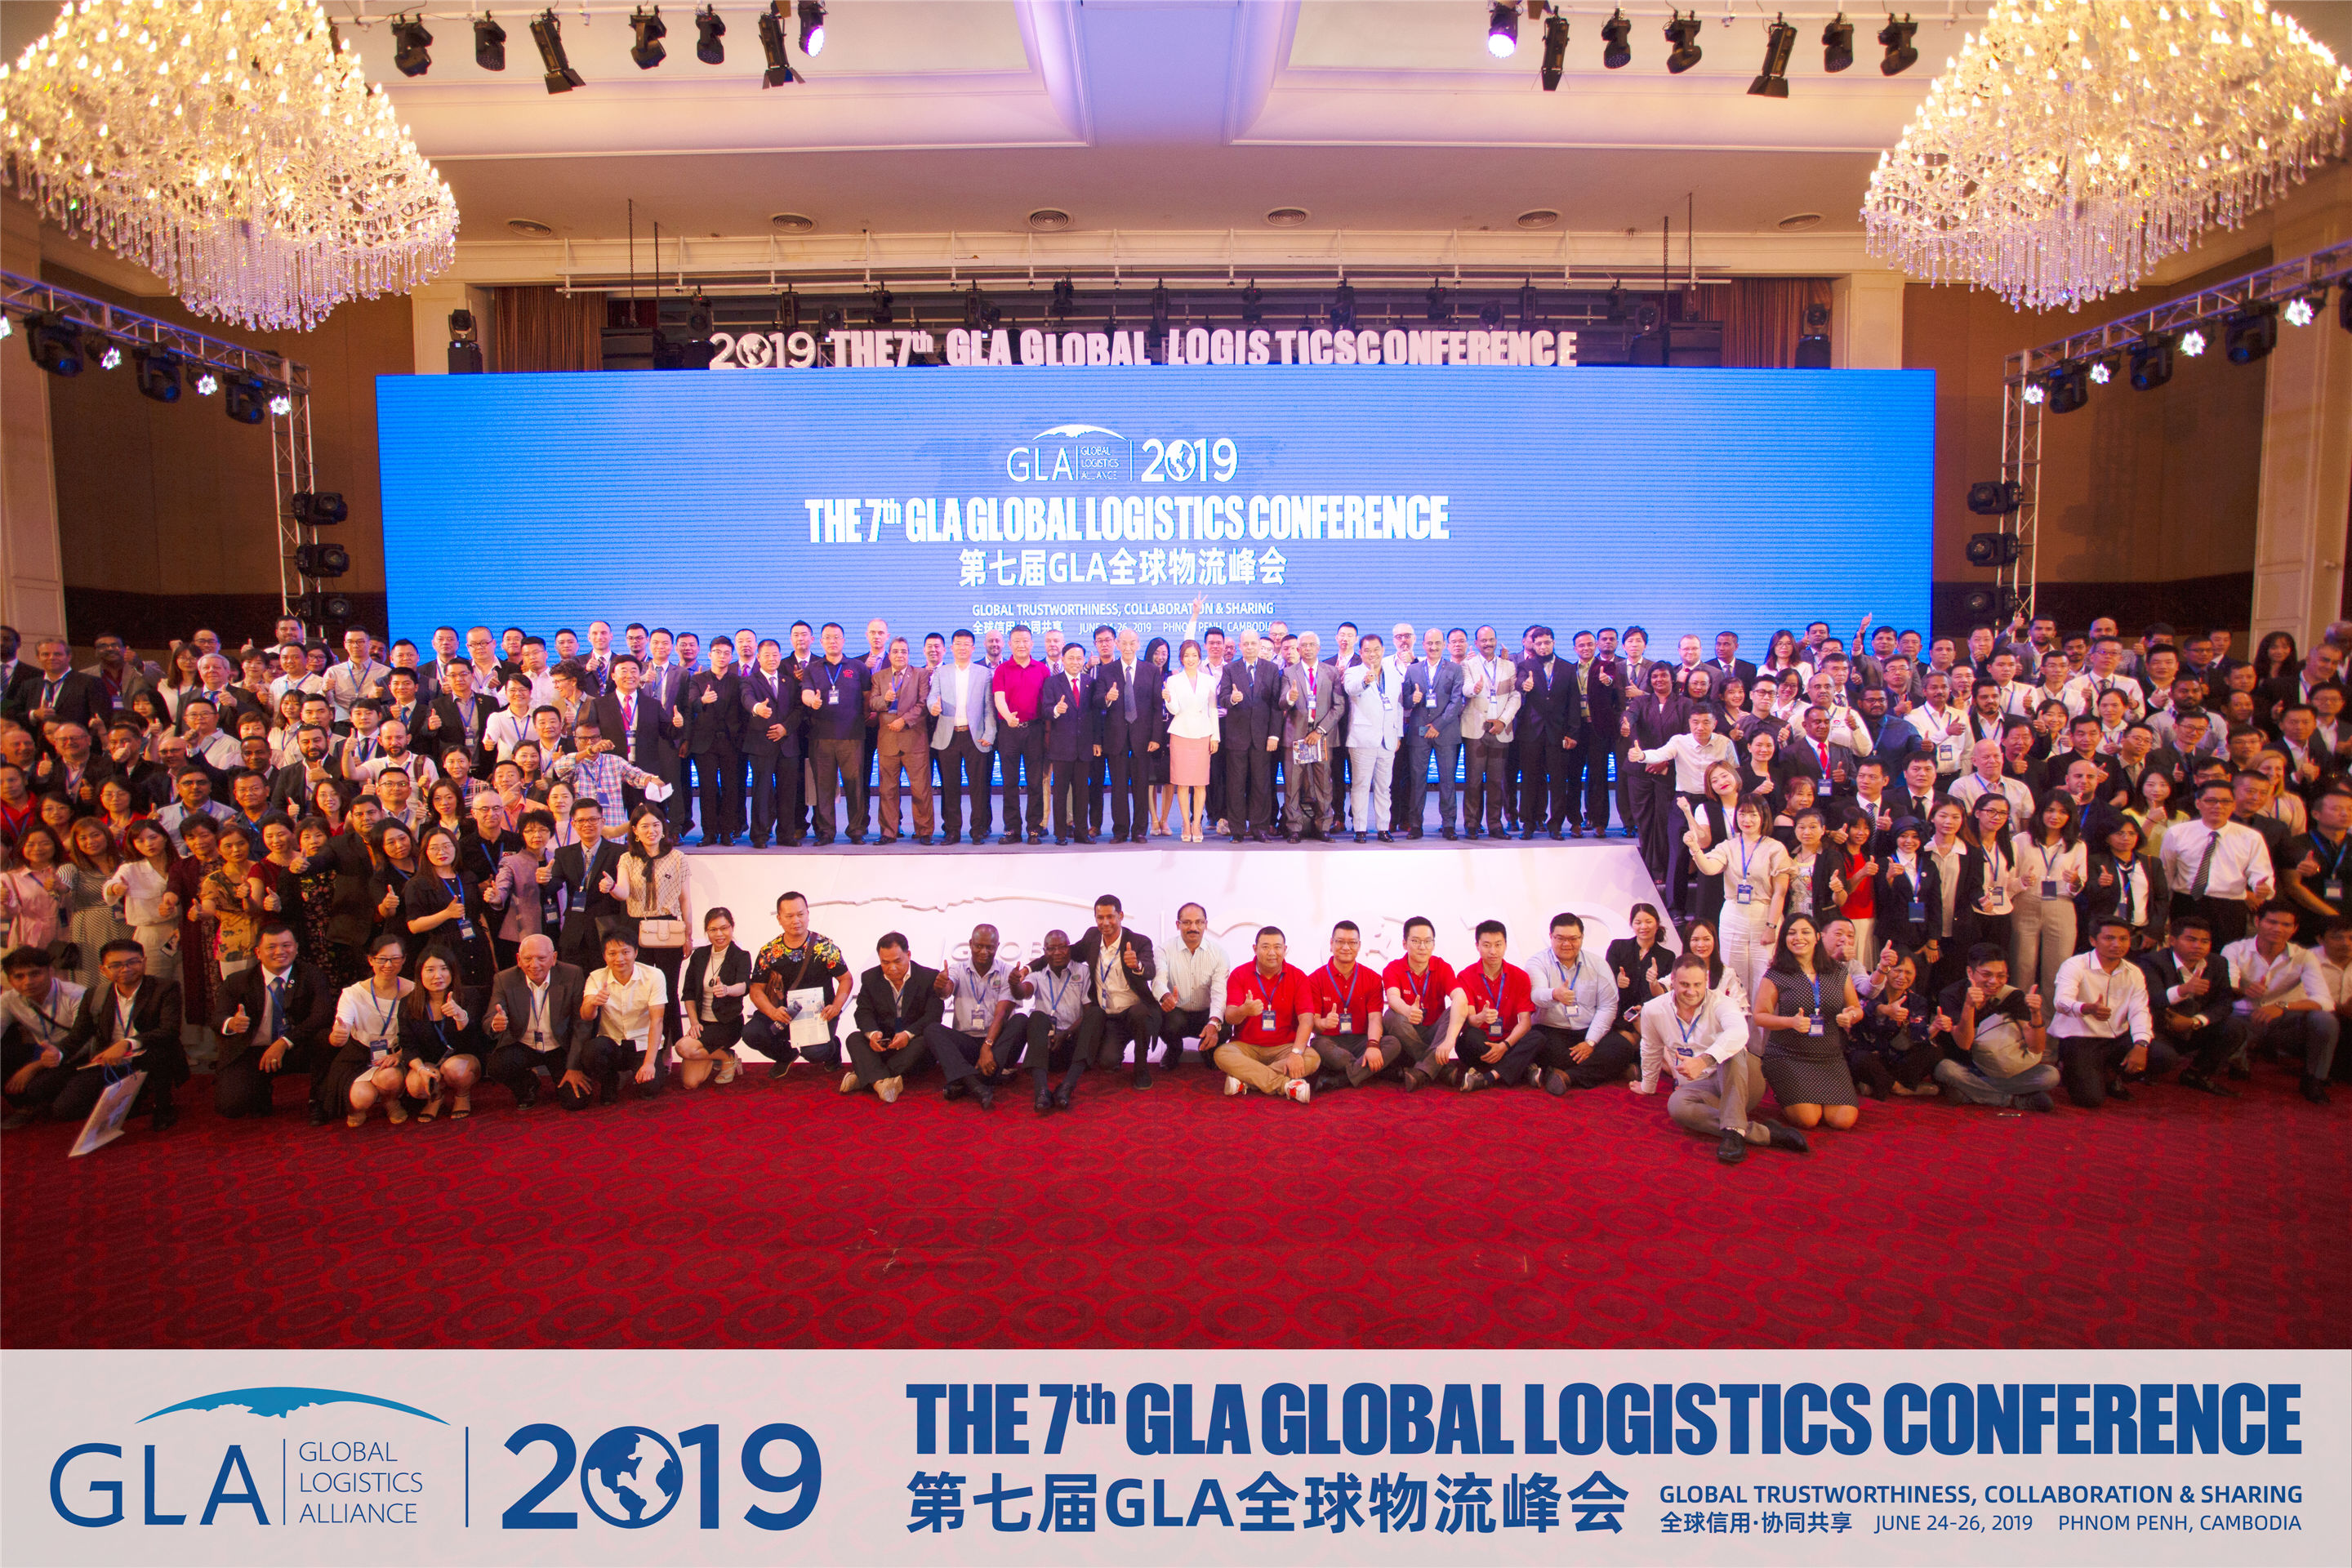 2019第七届GLA 全球物流企业峰会柬埔寨国家电视台报道视频